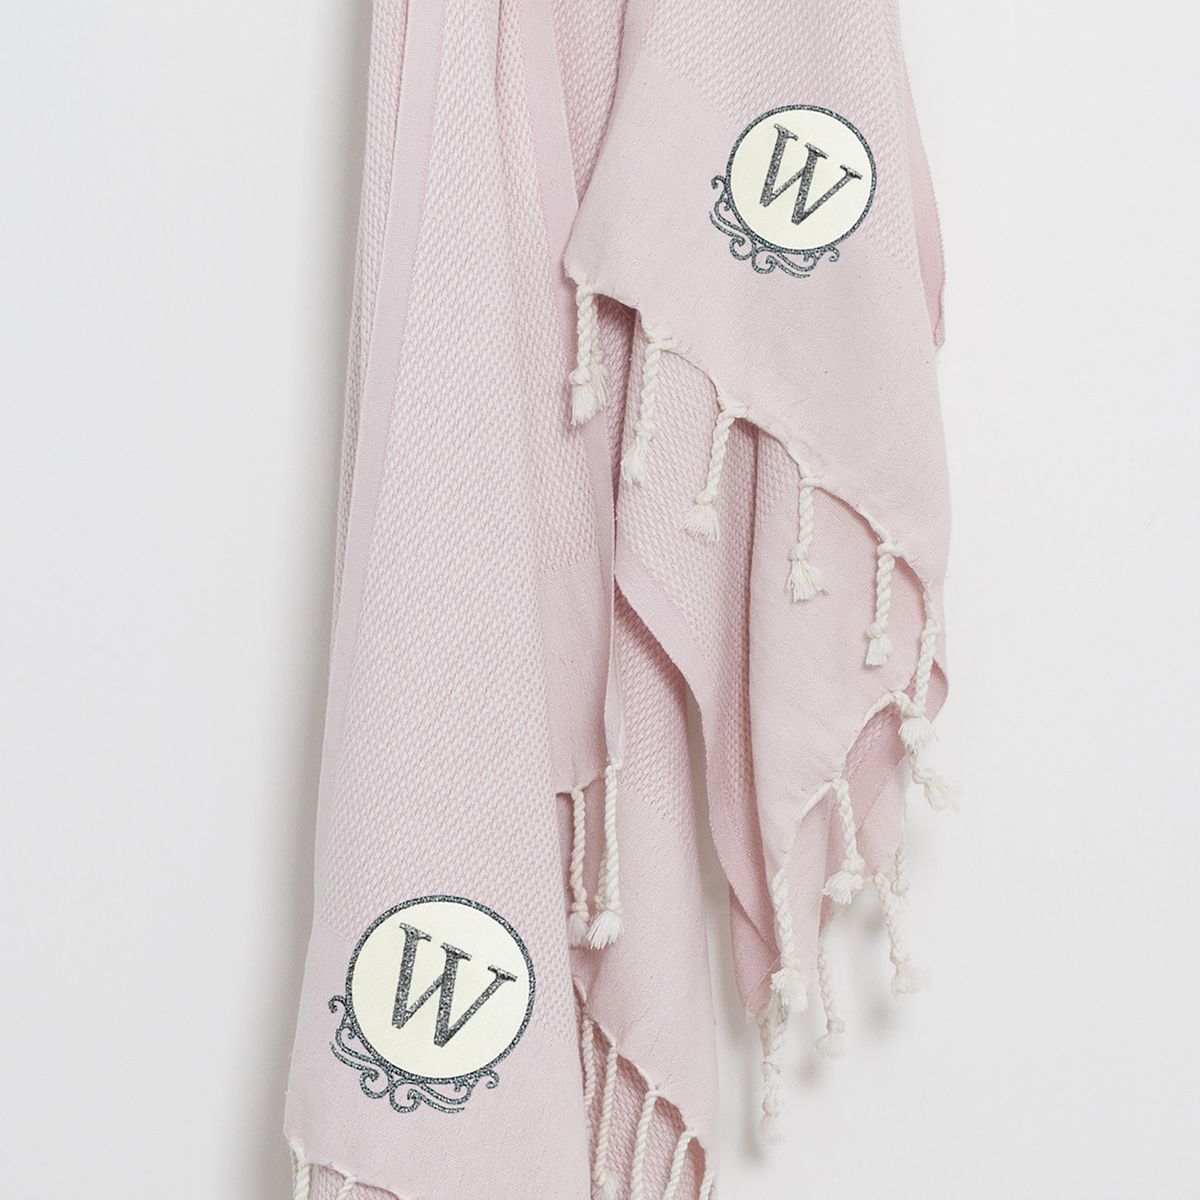 送料無料 Linum Home 引き出物 最も信頼できる Textiles トルコ製コットンビーチ ハンドタオル2枚セット 35インチ x 68インチ ピンク 海外通販 Towels Pink Pieces Beach Cotton Turkish 35